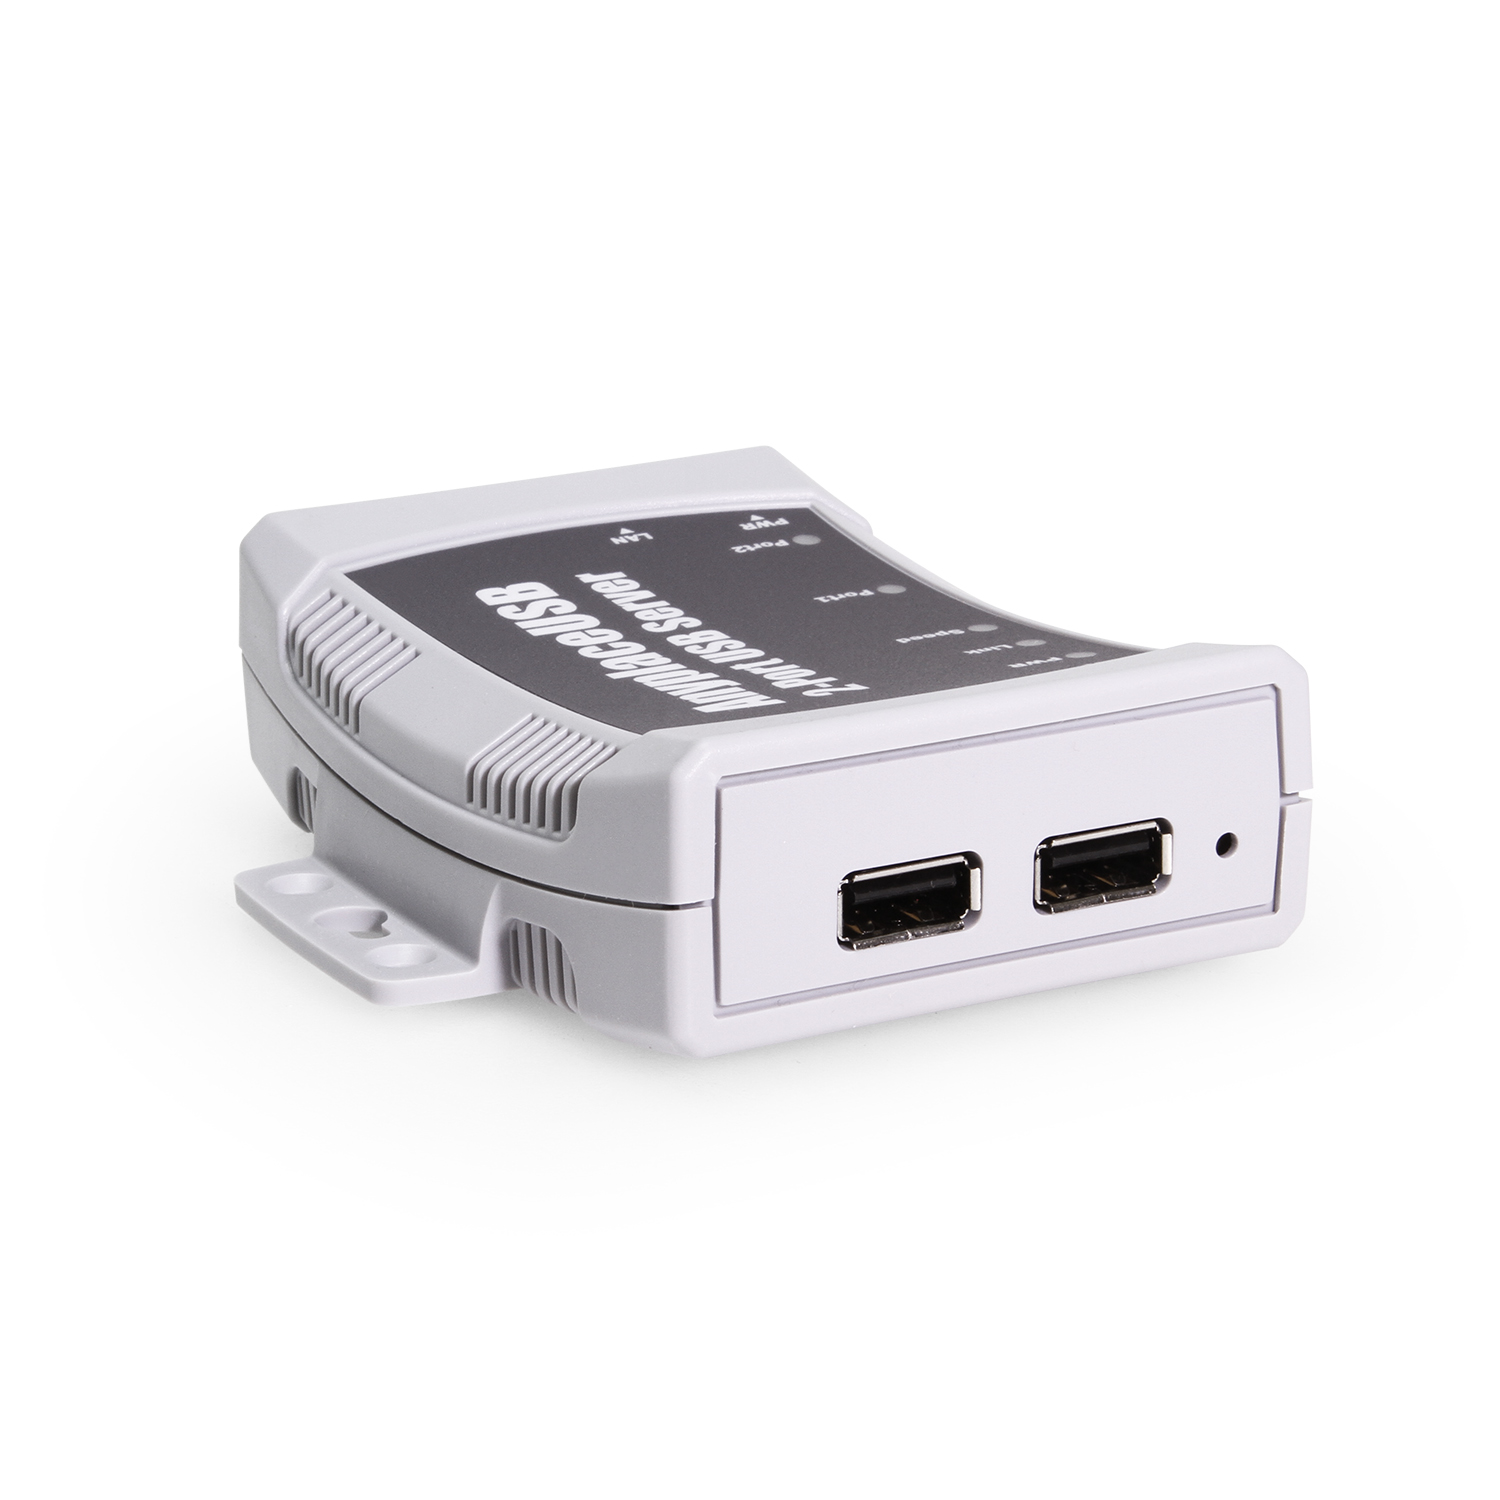 Rodeo Penneven cirkulation 2 Port USB 2.0 Over Ethernet USB Device Server - Coolgear